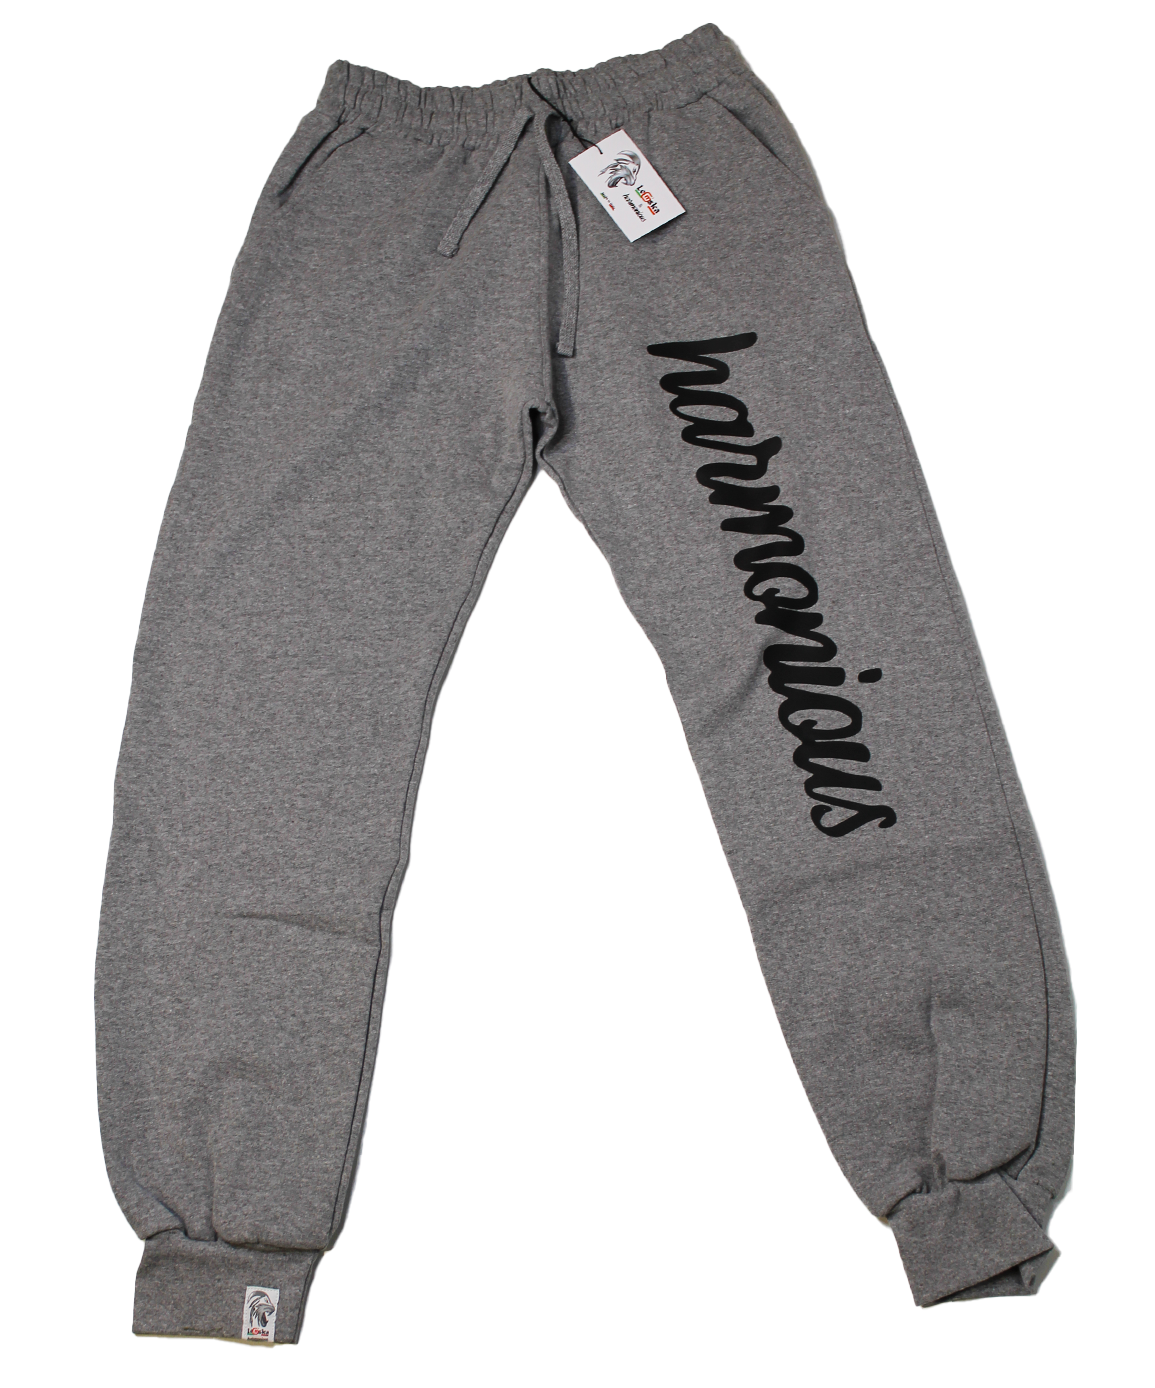 Pantalone tuta Harmonious 100% Made in Italy